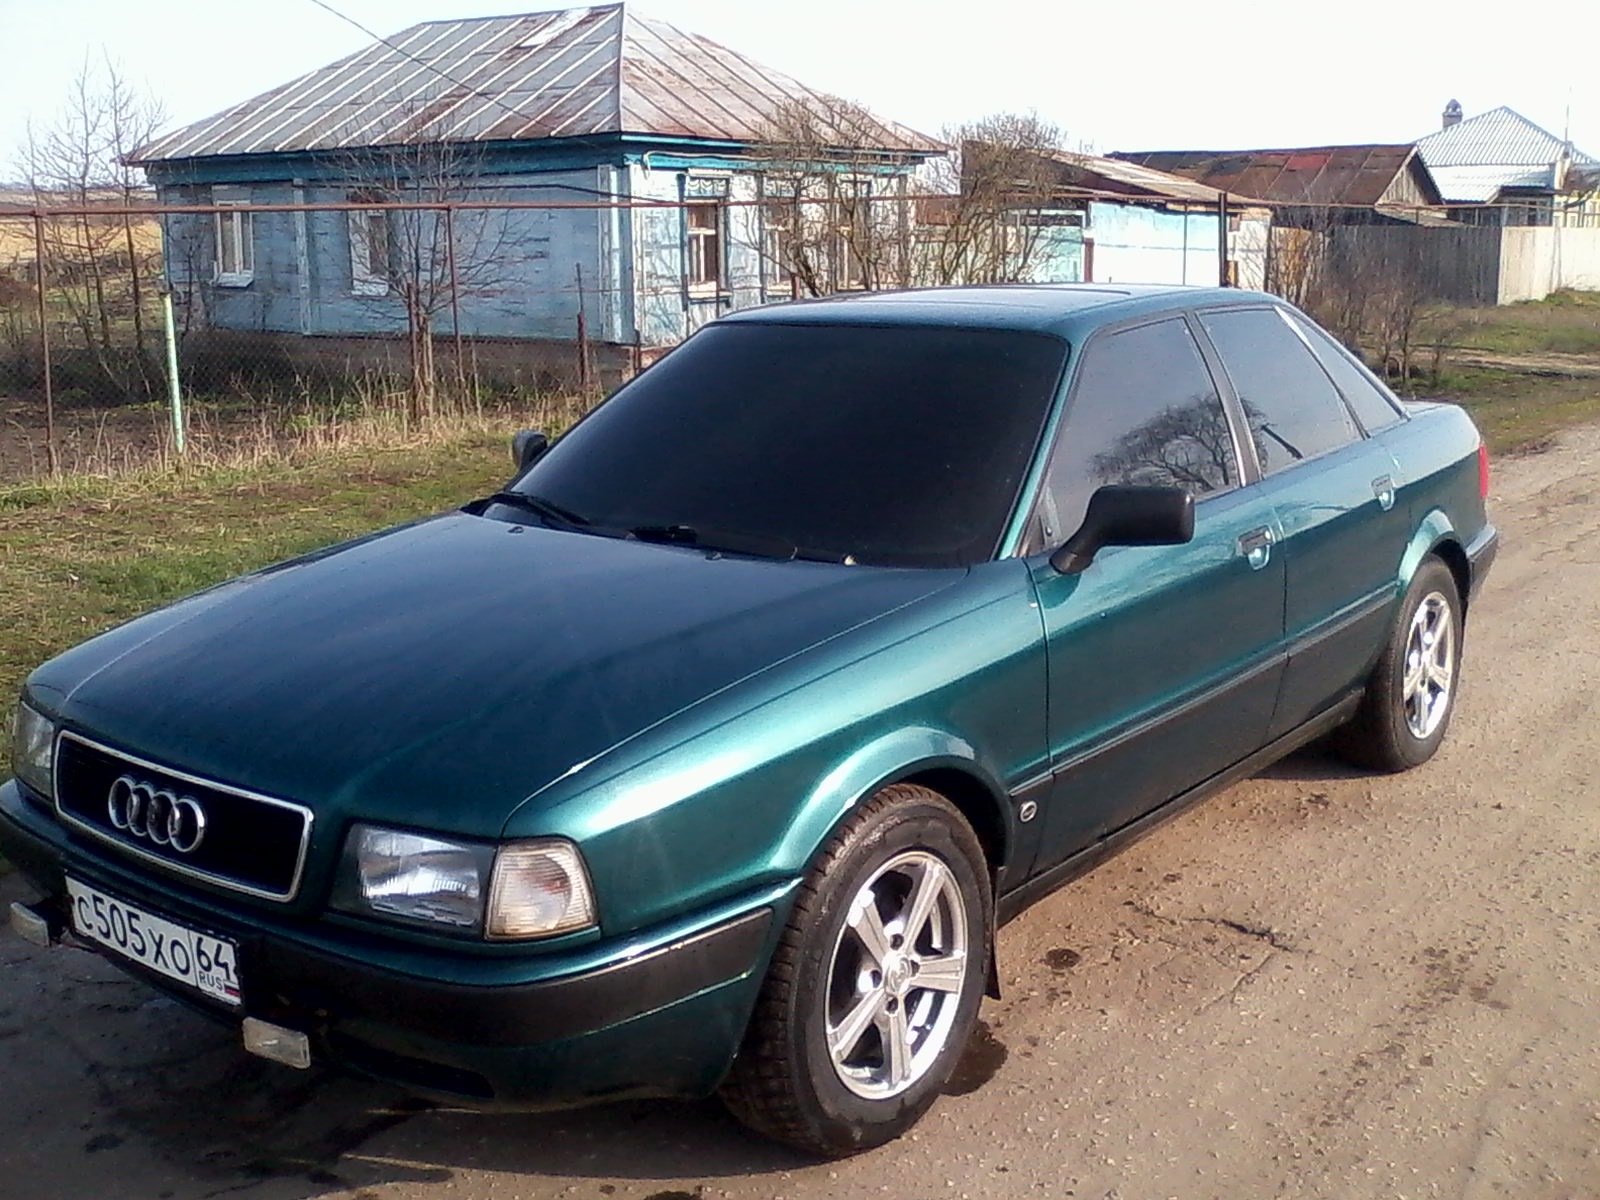 Купить ауди б4 в белоруссии. Ауди 80 б4. Ауди 80 б4 2.0. Audi 80 b4 4.2. Ауди 80 2.0е.